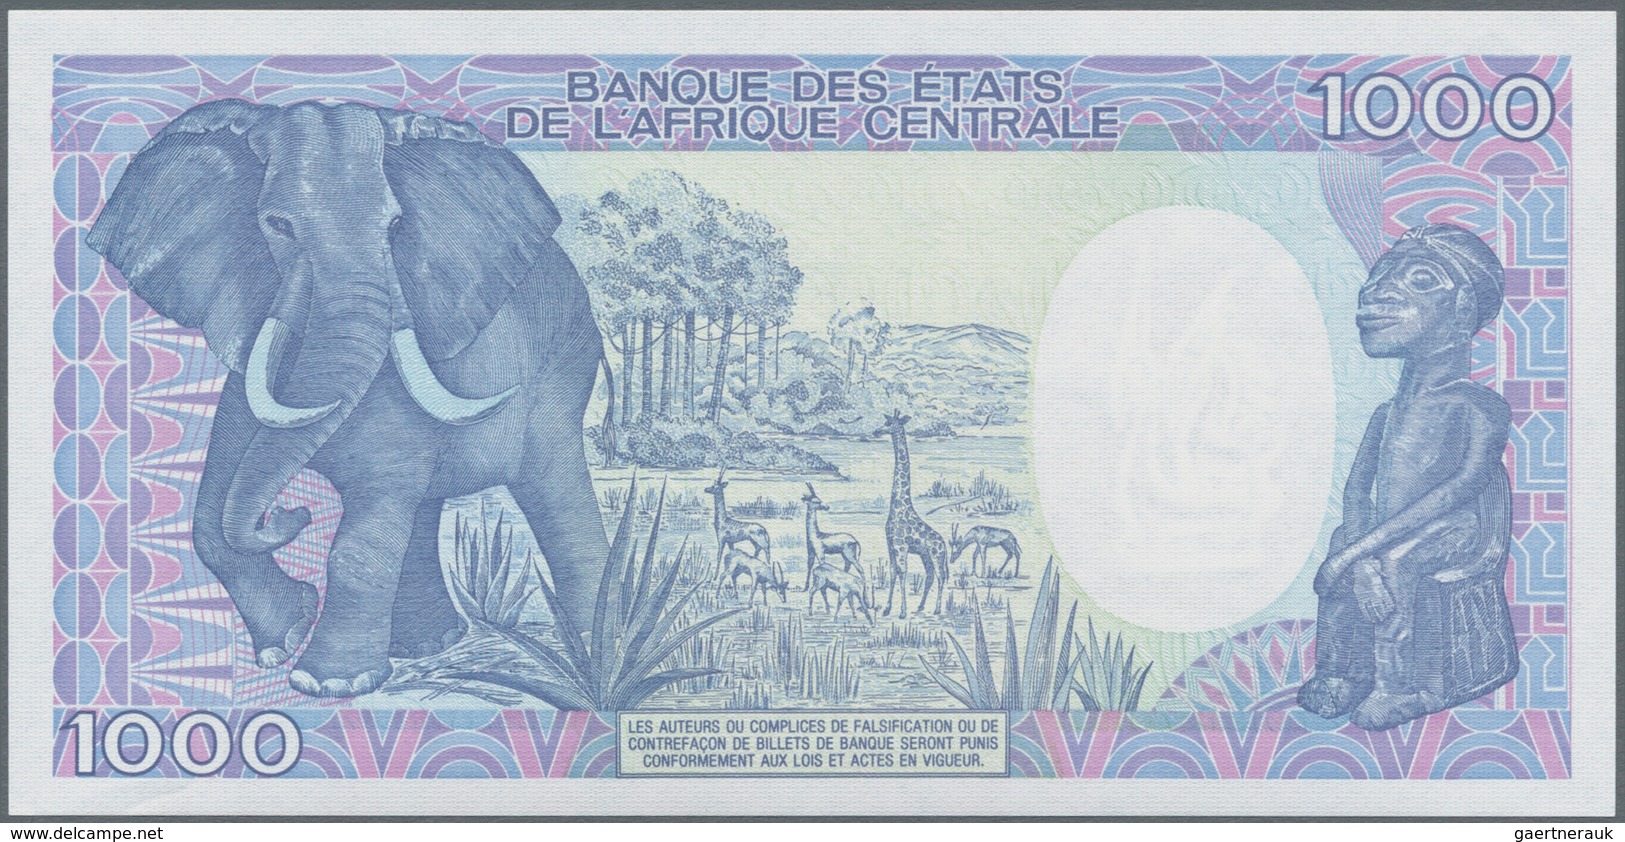 Chad / Tschad: Republique Du Tschad Pair With 500 Francs 1990 P.9c (UNC) And 1000 Francs 1988 P.10A - Tschad